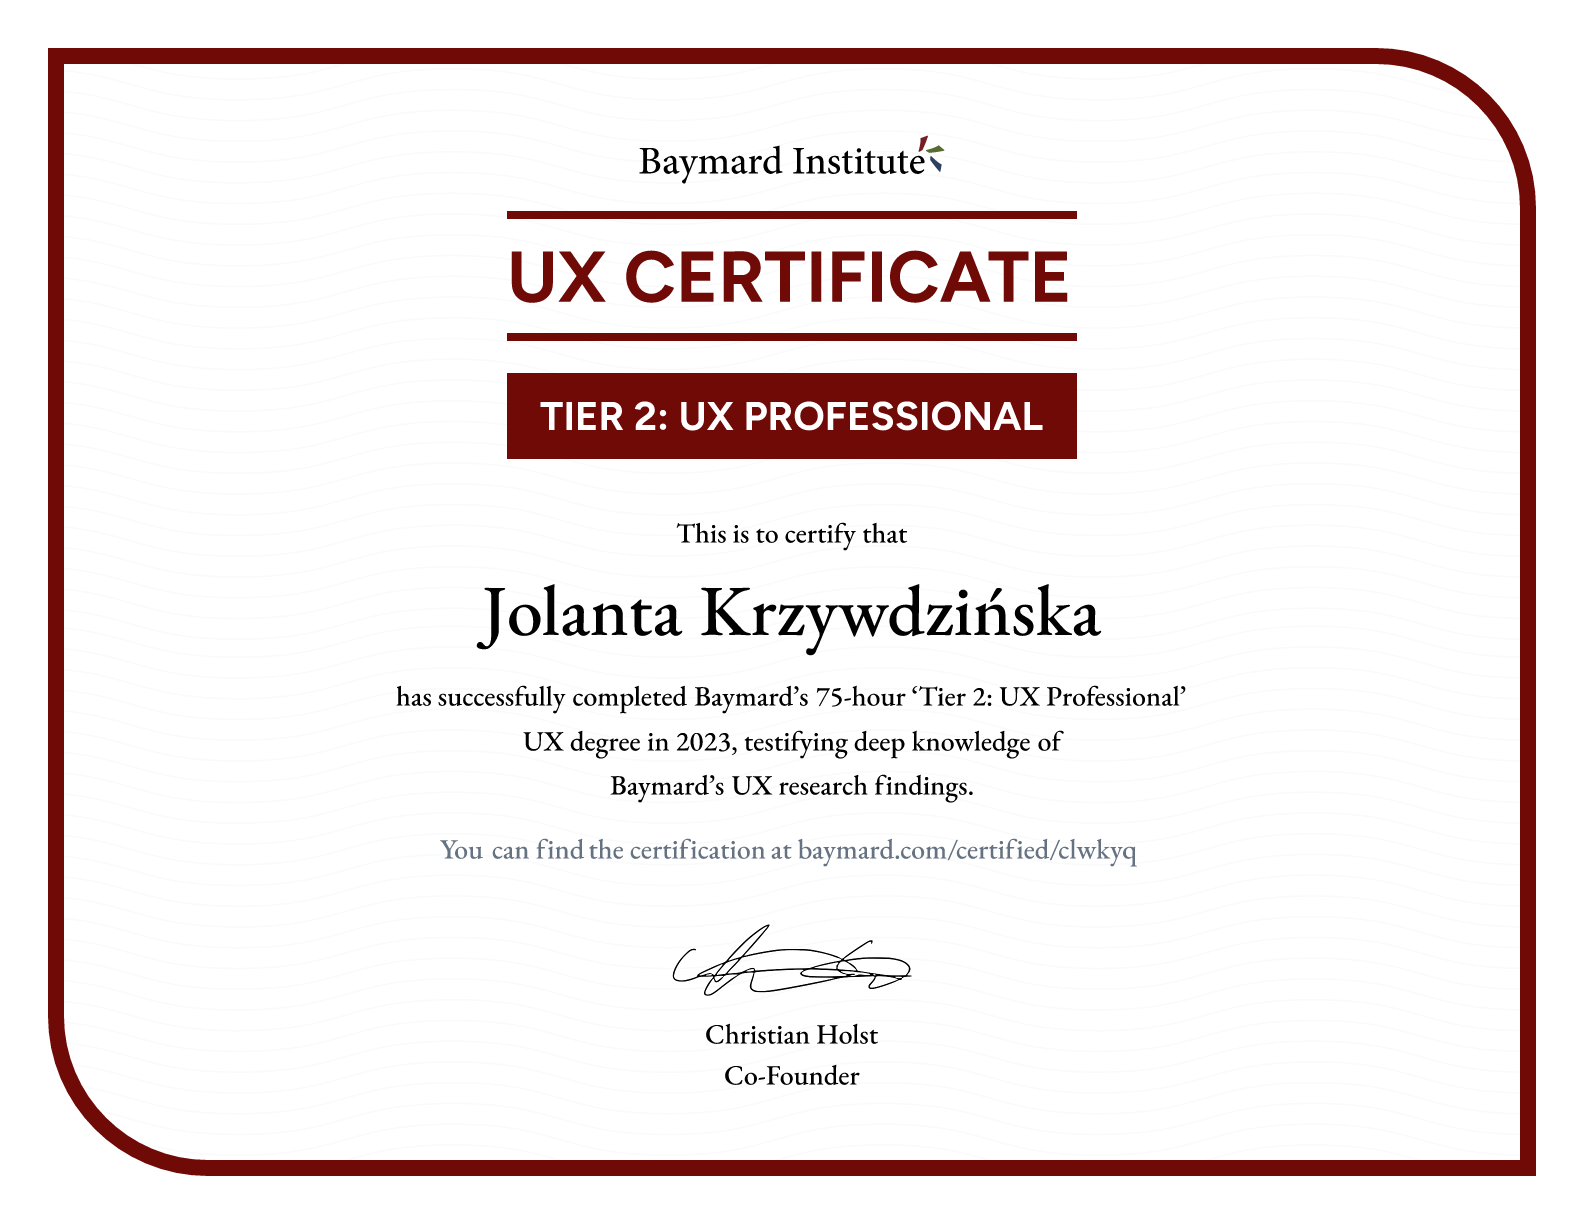 Jolanta Krzywdzińska’s certificate